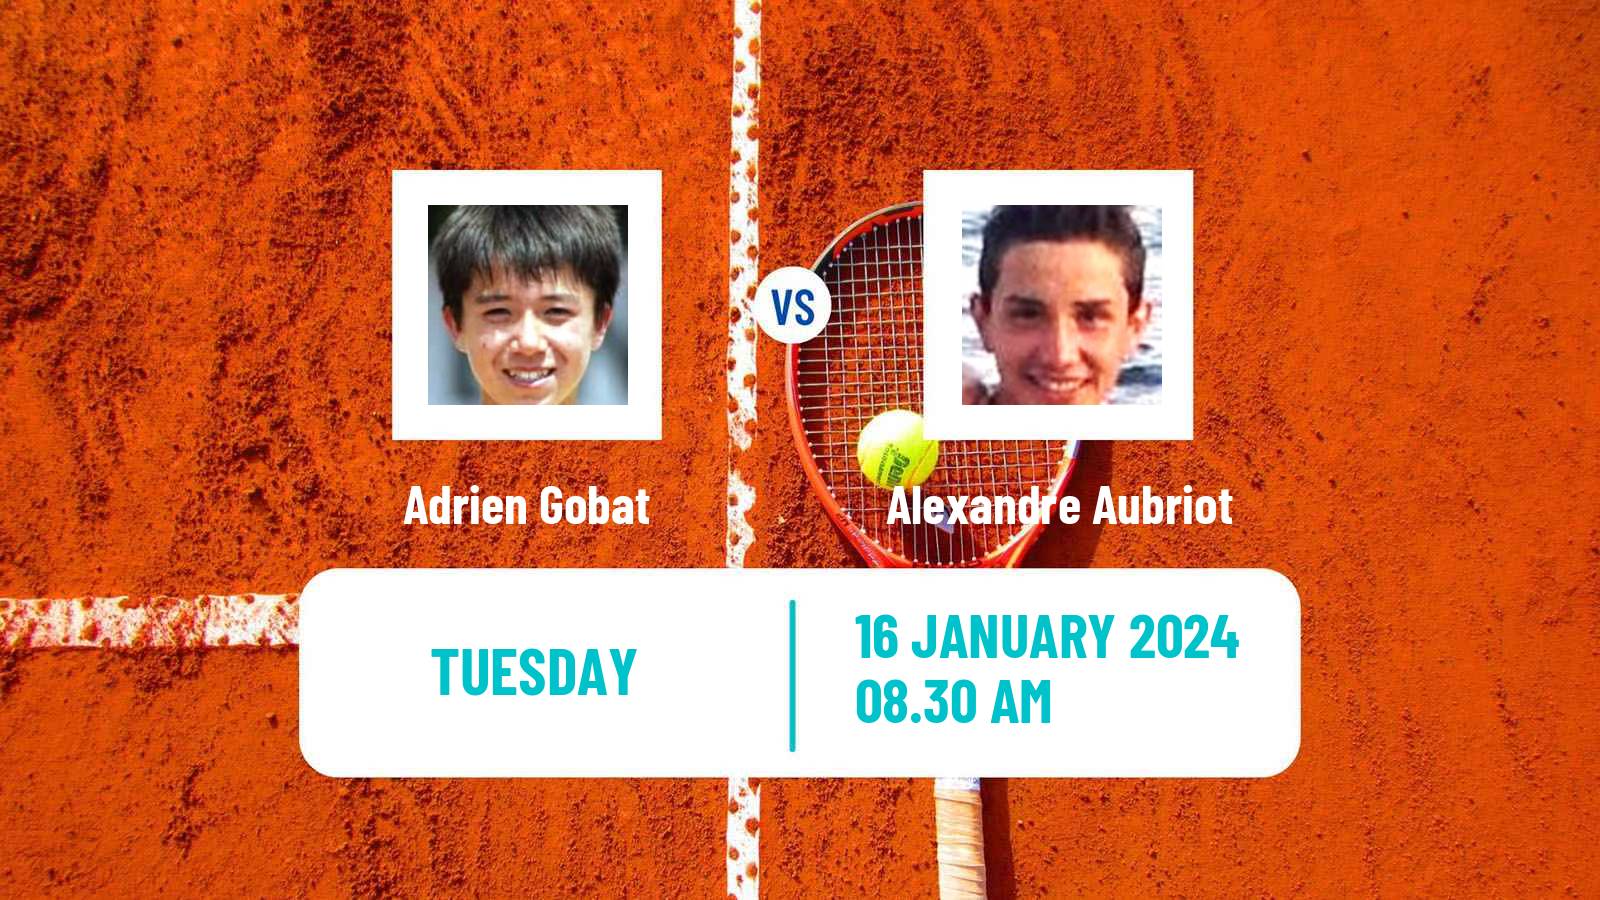 Tennis ITF M15 Bressuire Men 2024 Adrien Gobat - Alexandre Aubriot